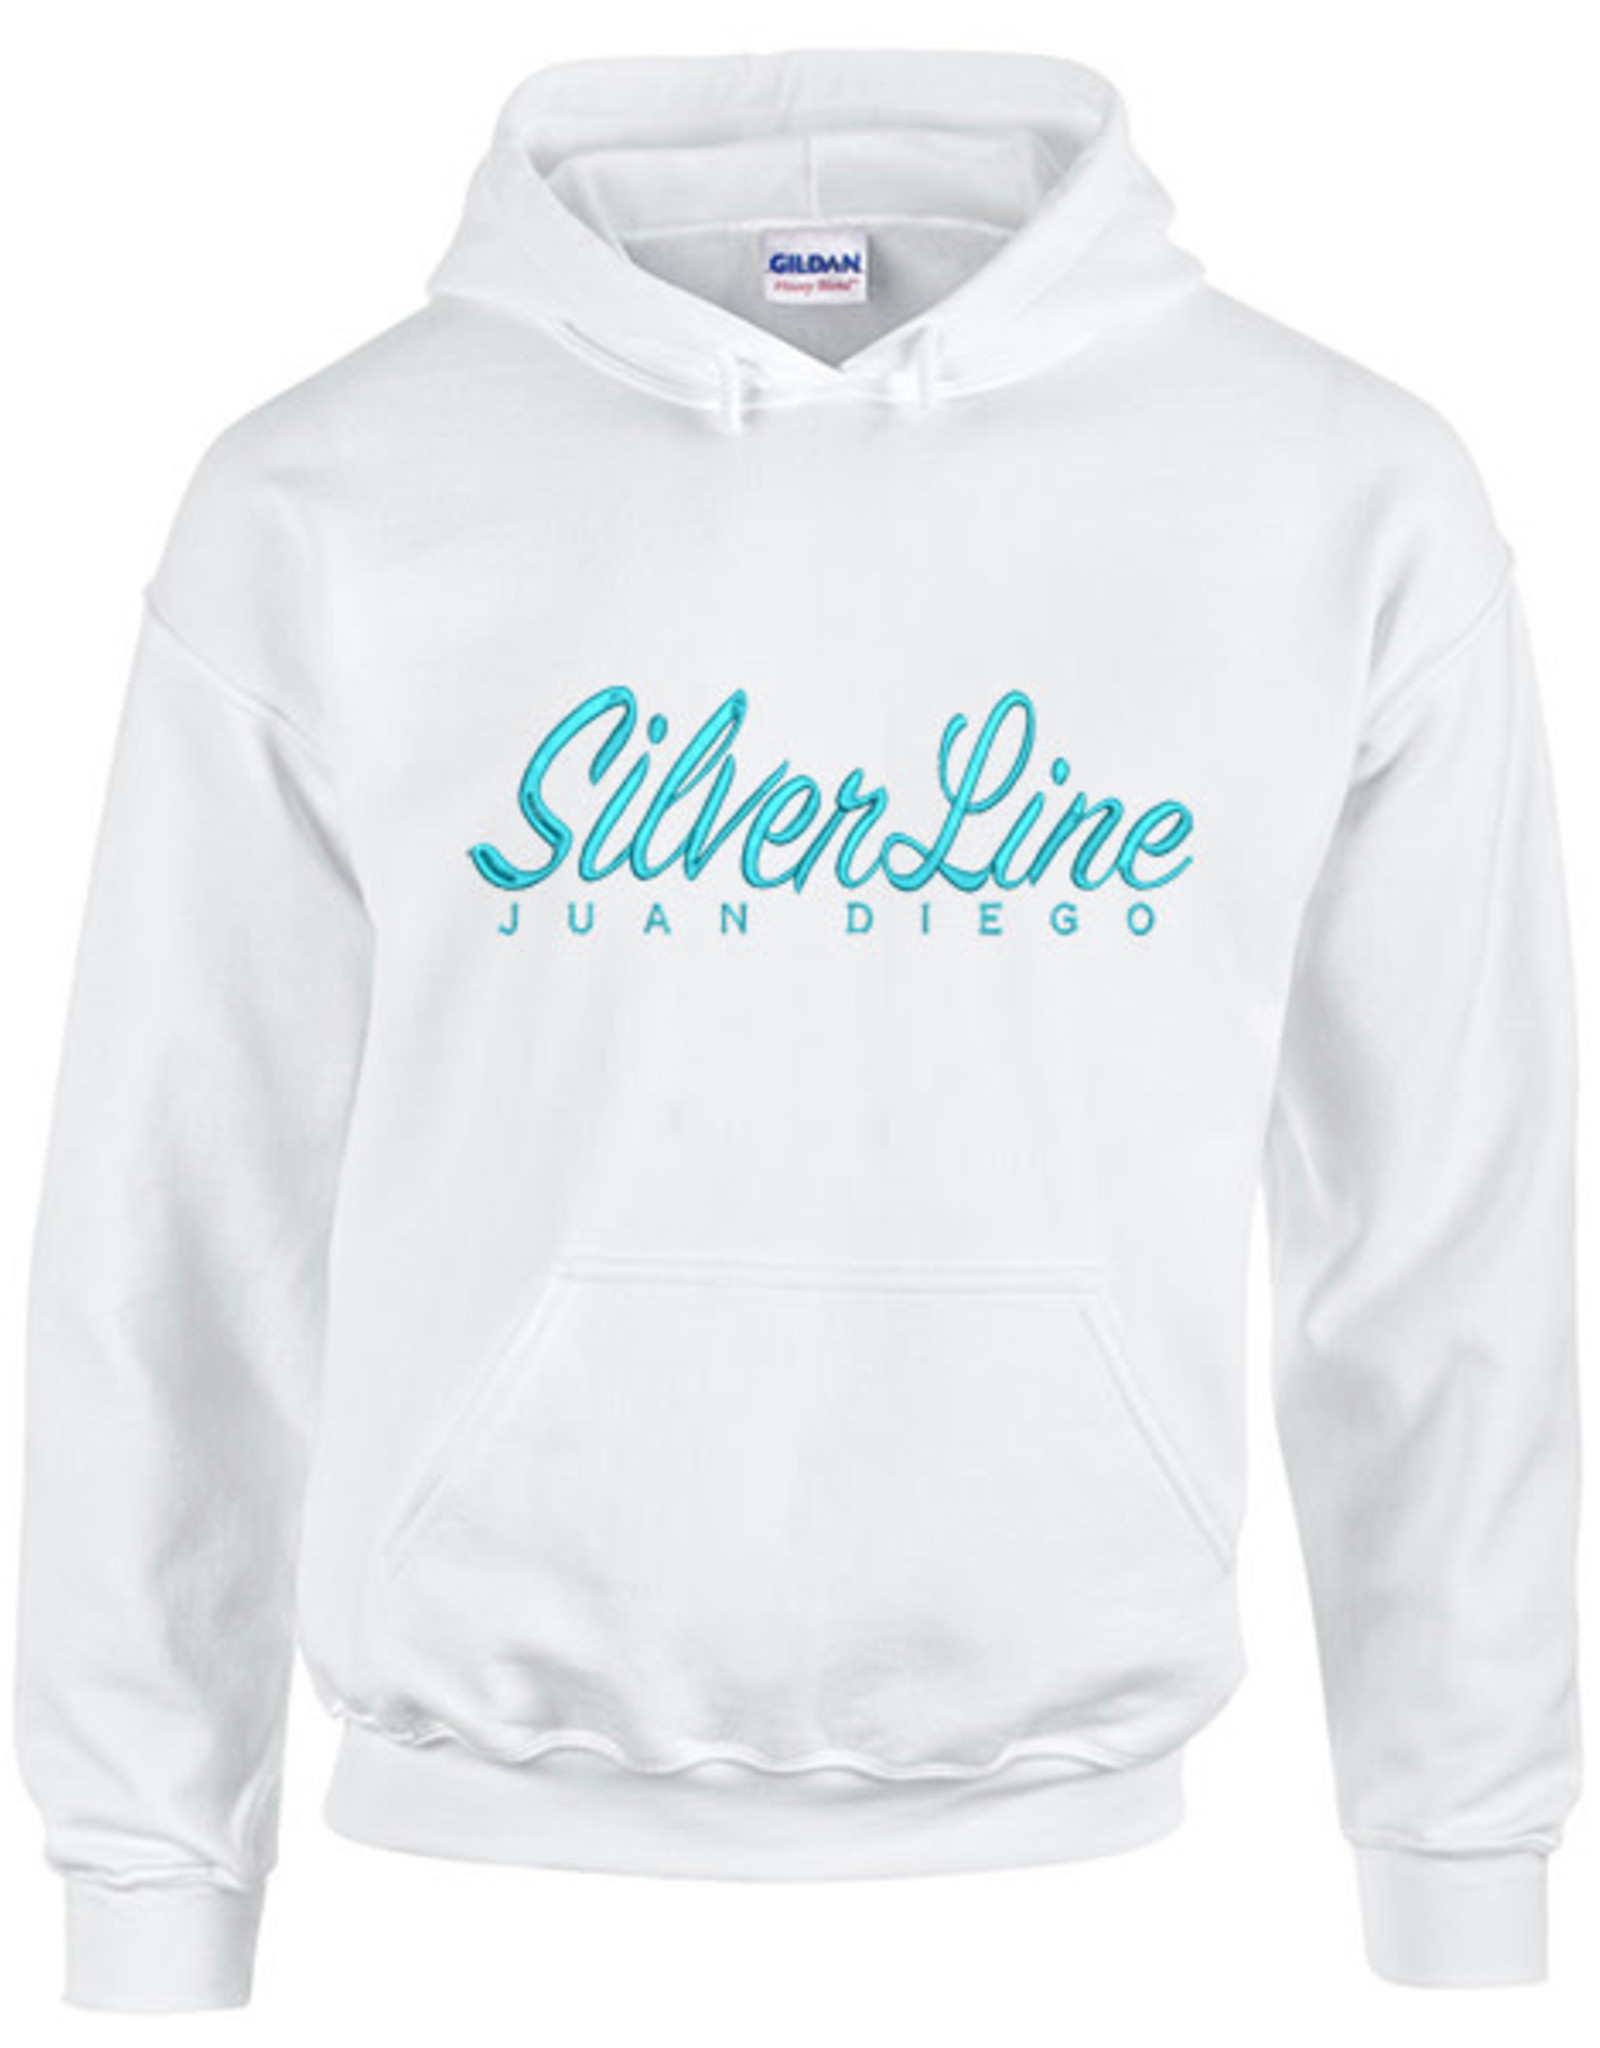 NON-UNIFORM JD SilverLine Embroidered Sweatshirt